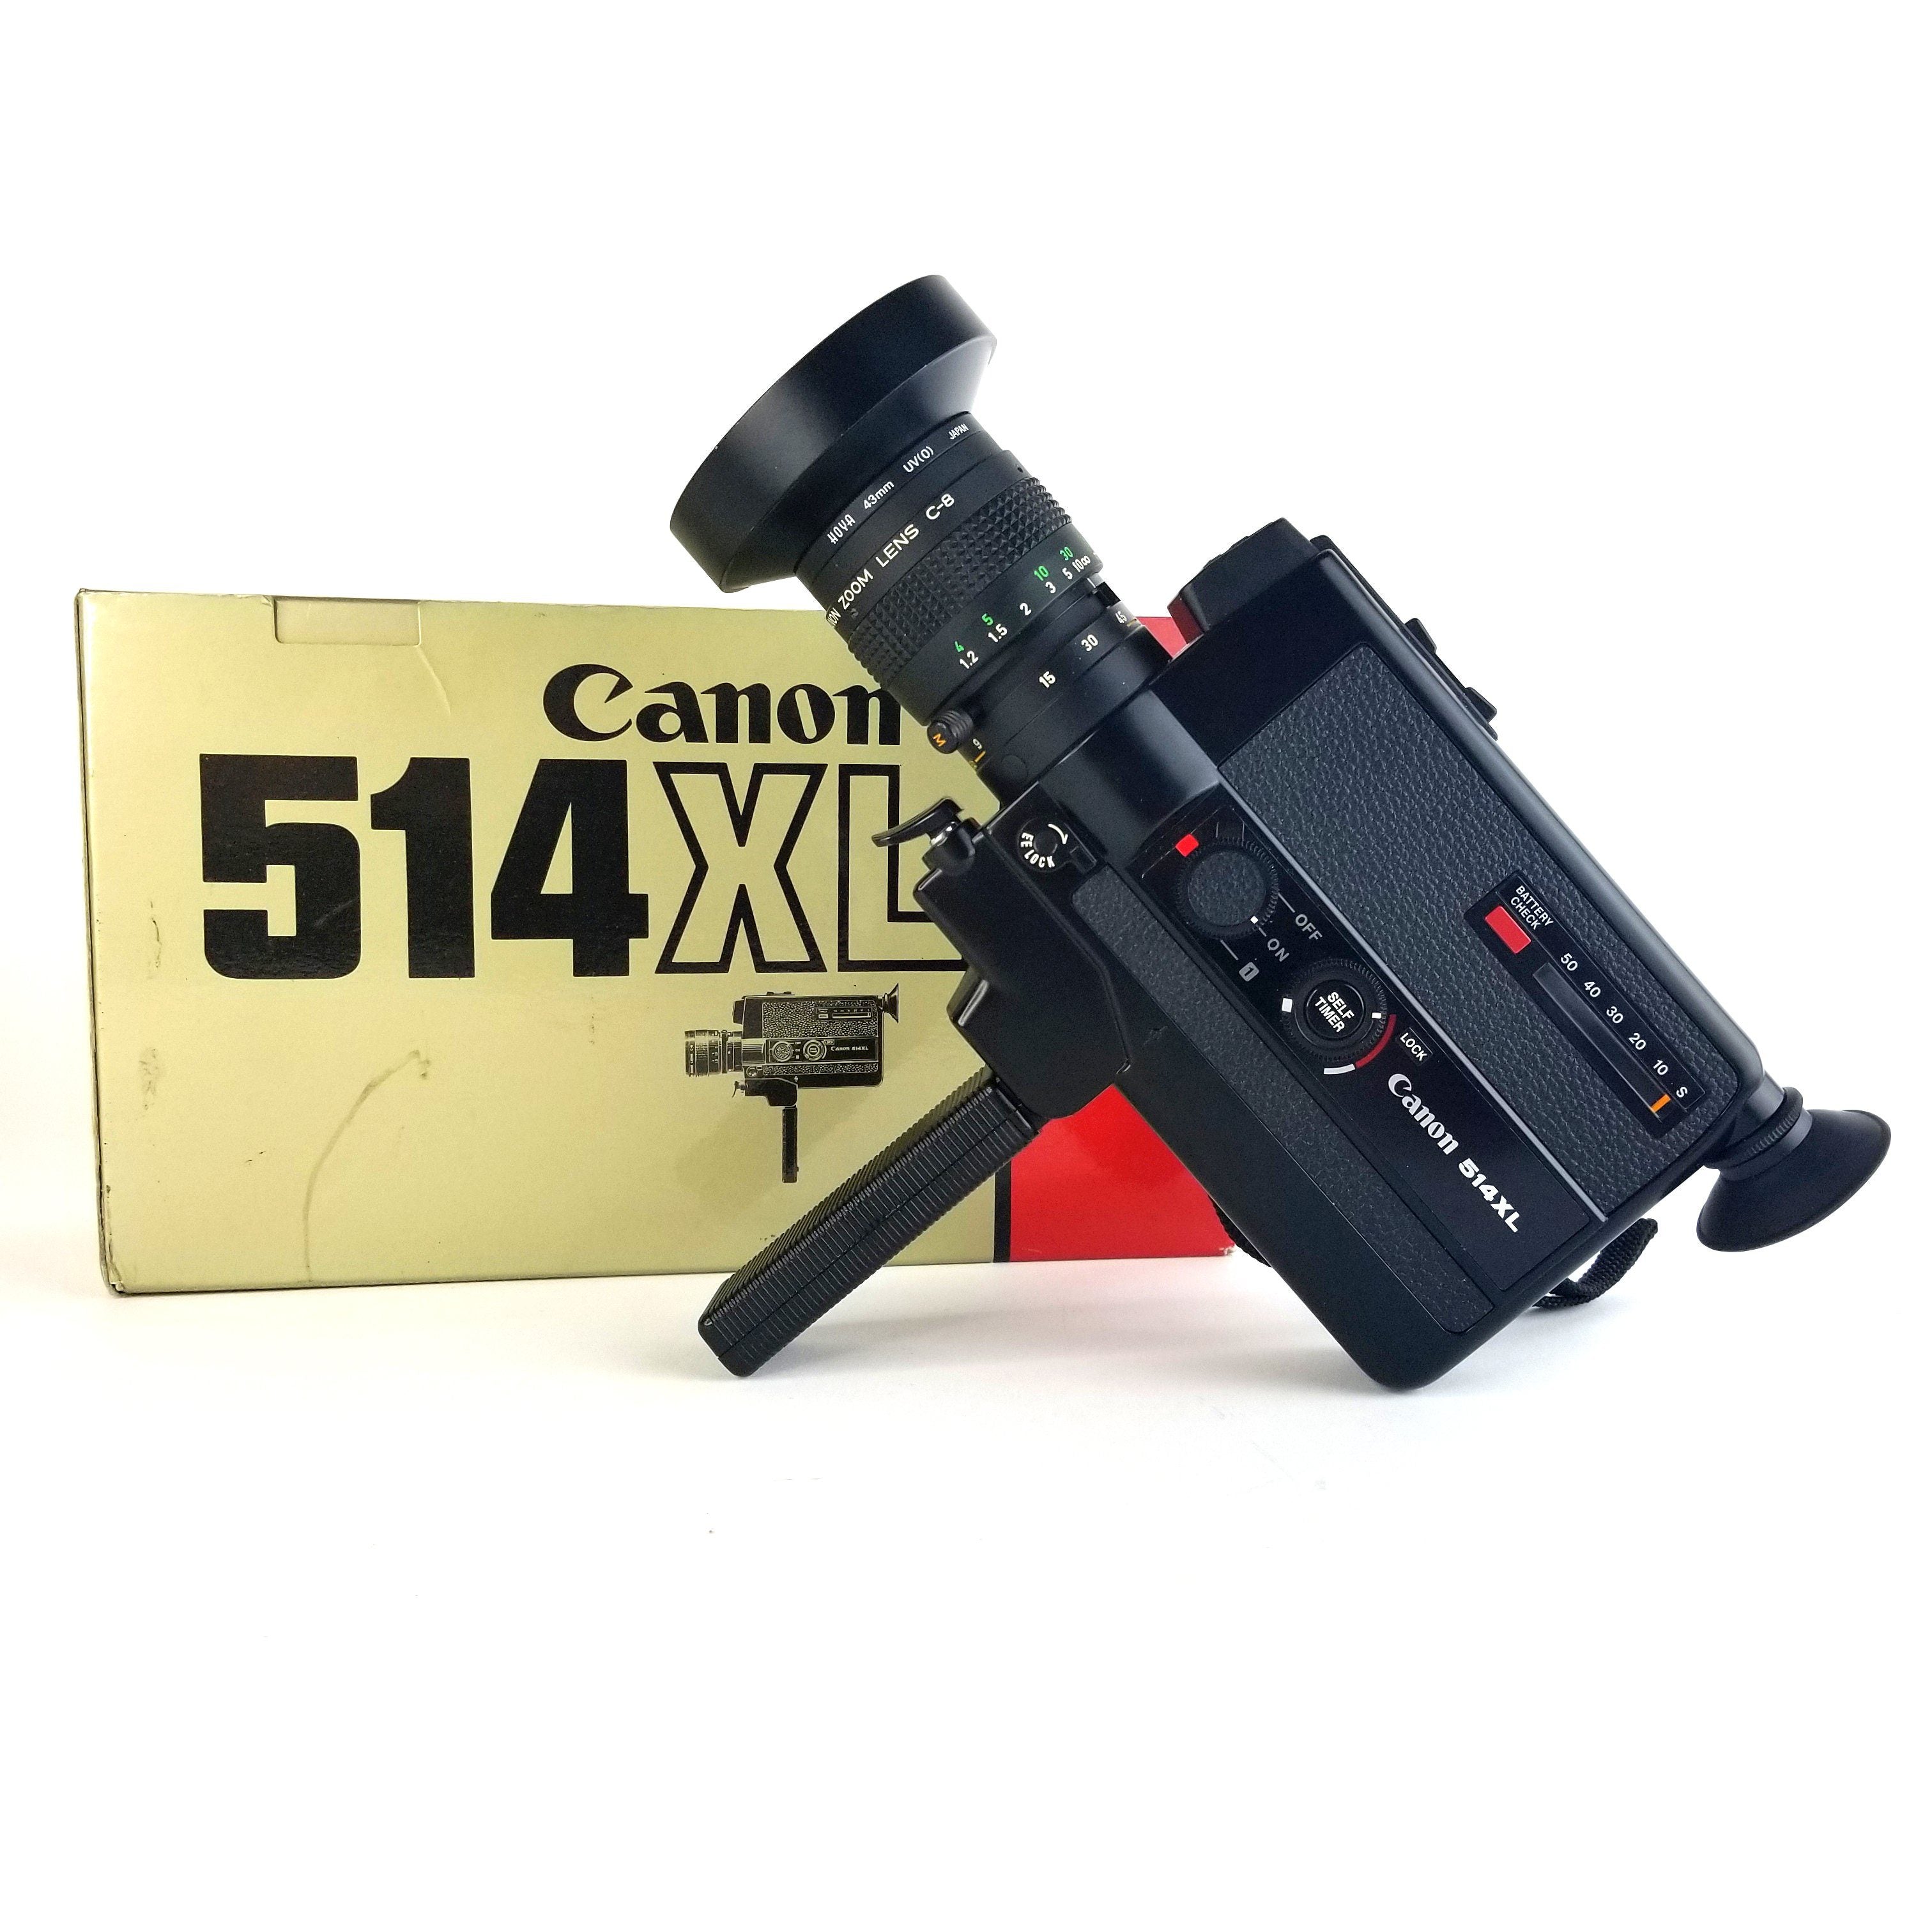 Canon 514XL Super 8 Camera Professionally Serviced With Retail Box & C-8  Wide Attachment